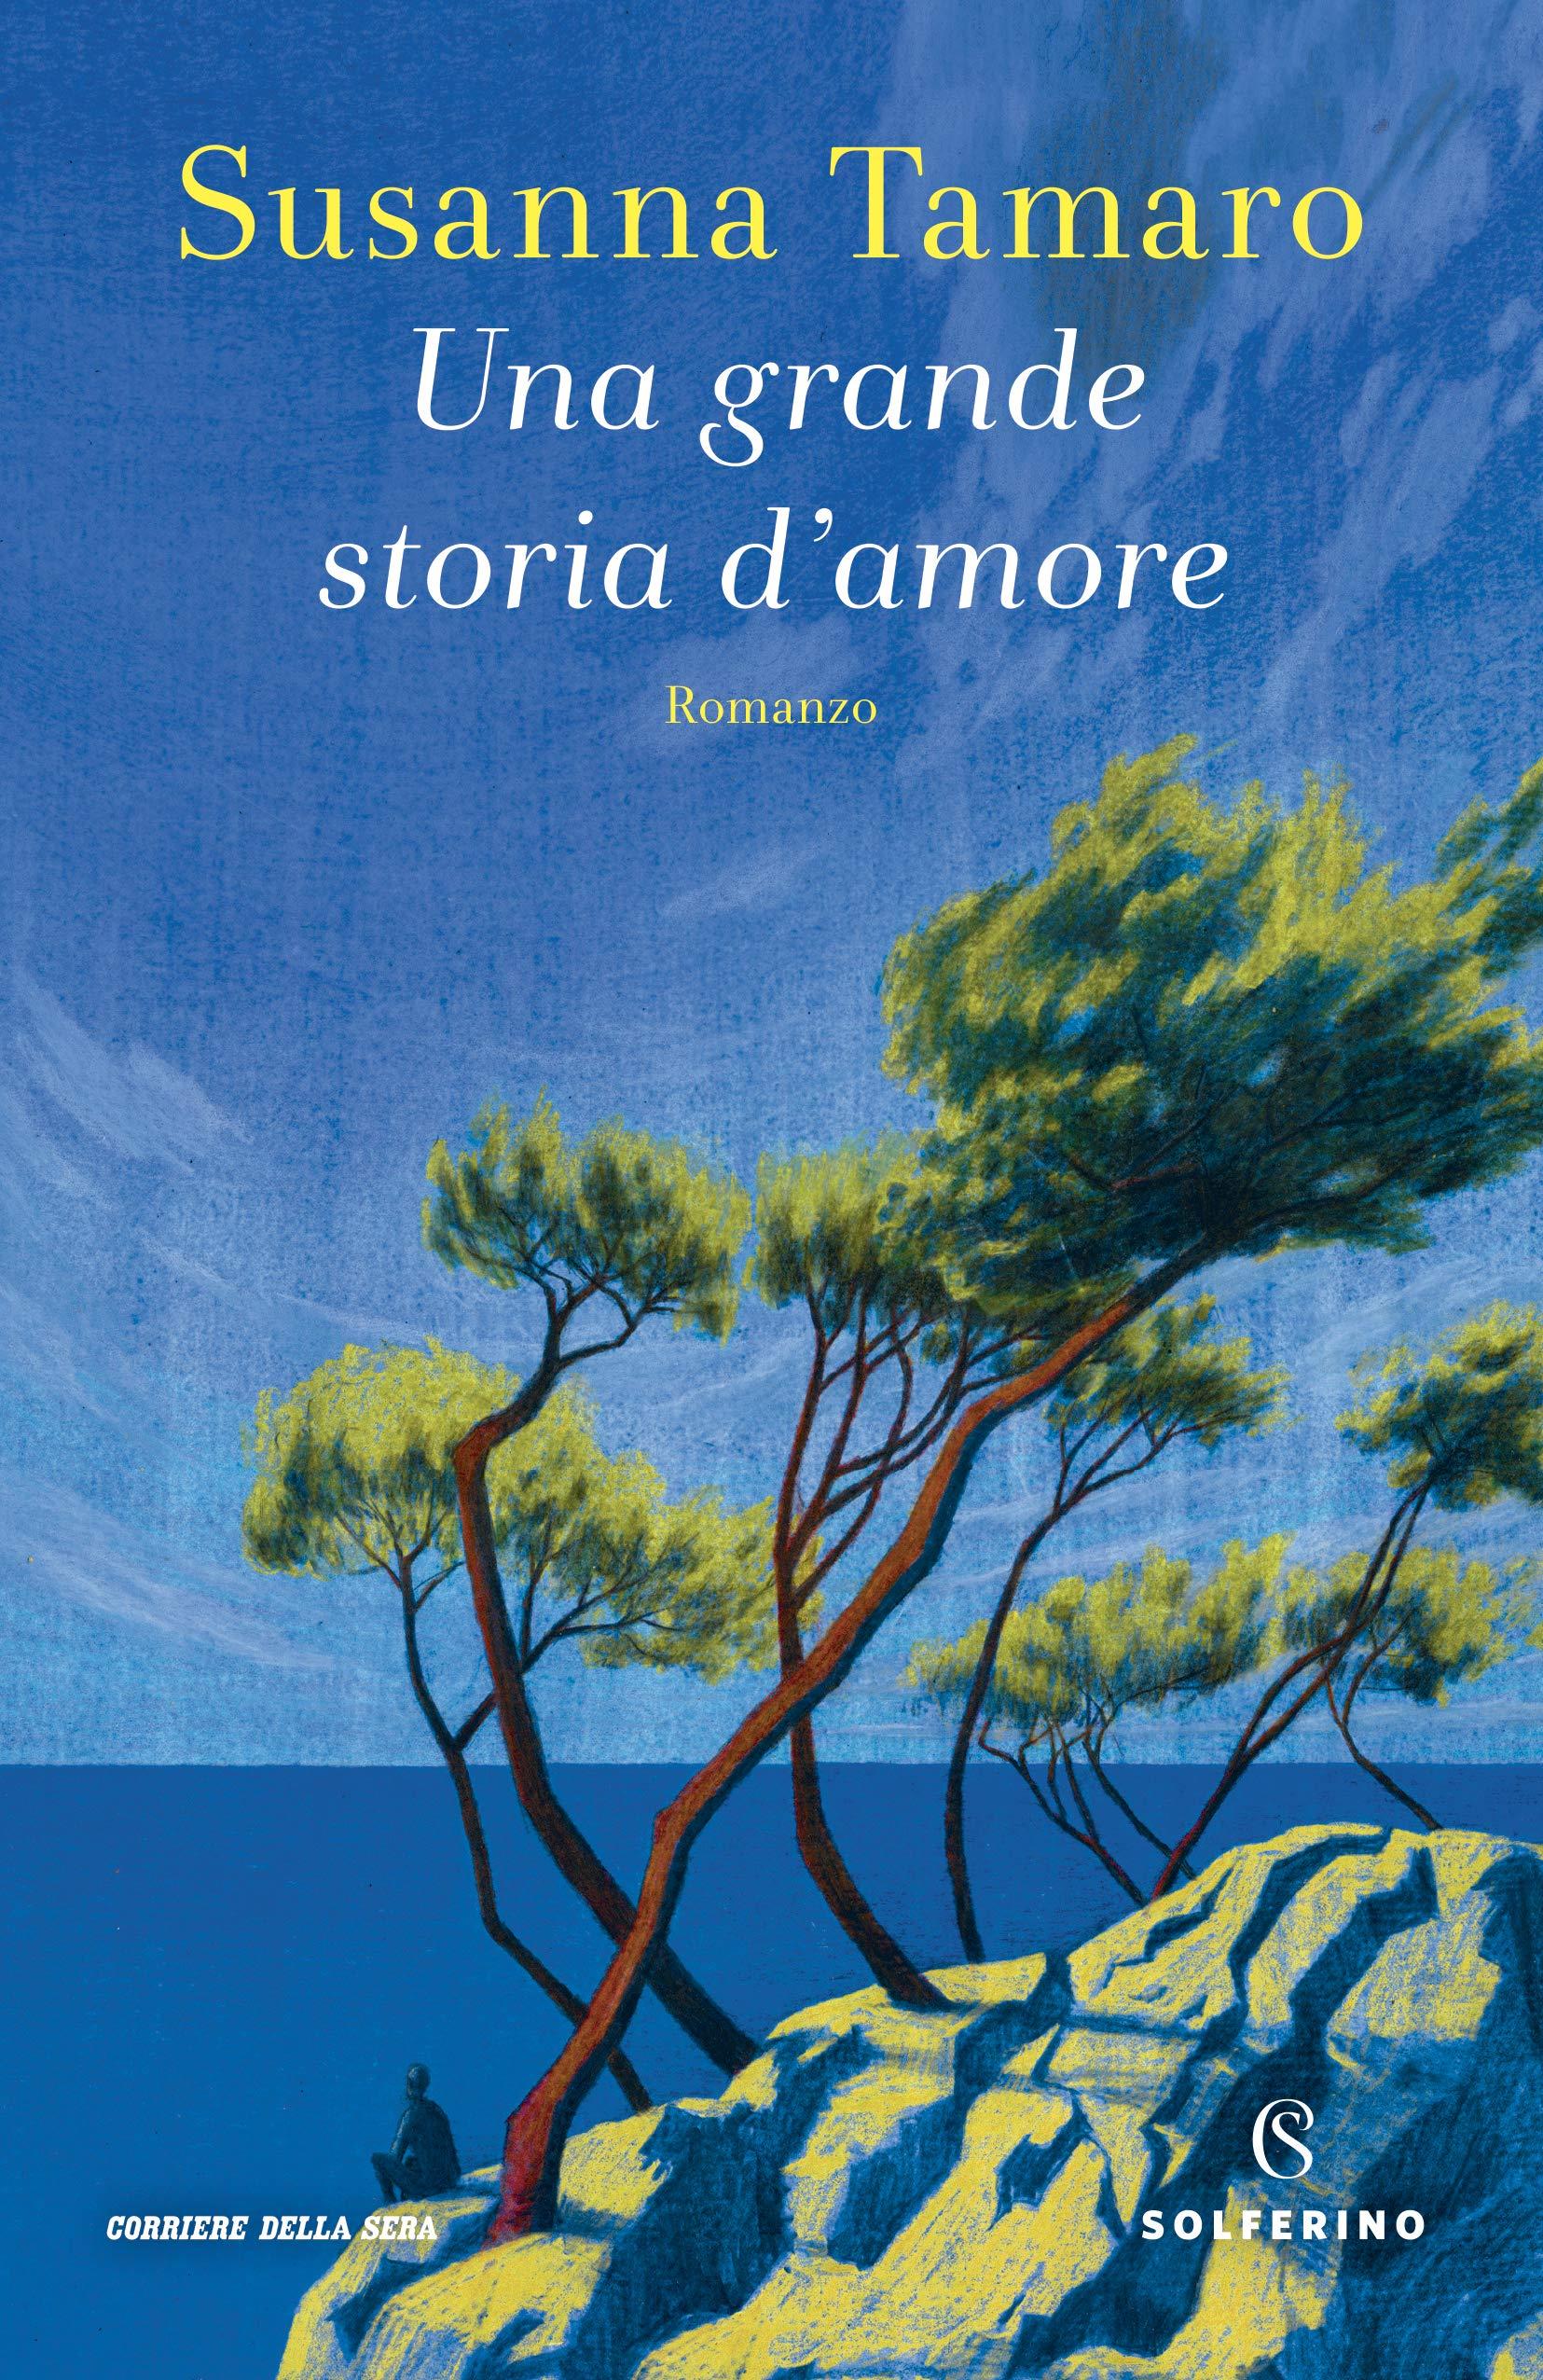 Libro "Una grande storia d'amore" di Susanna Tamaro